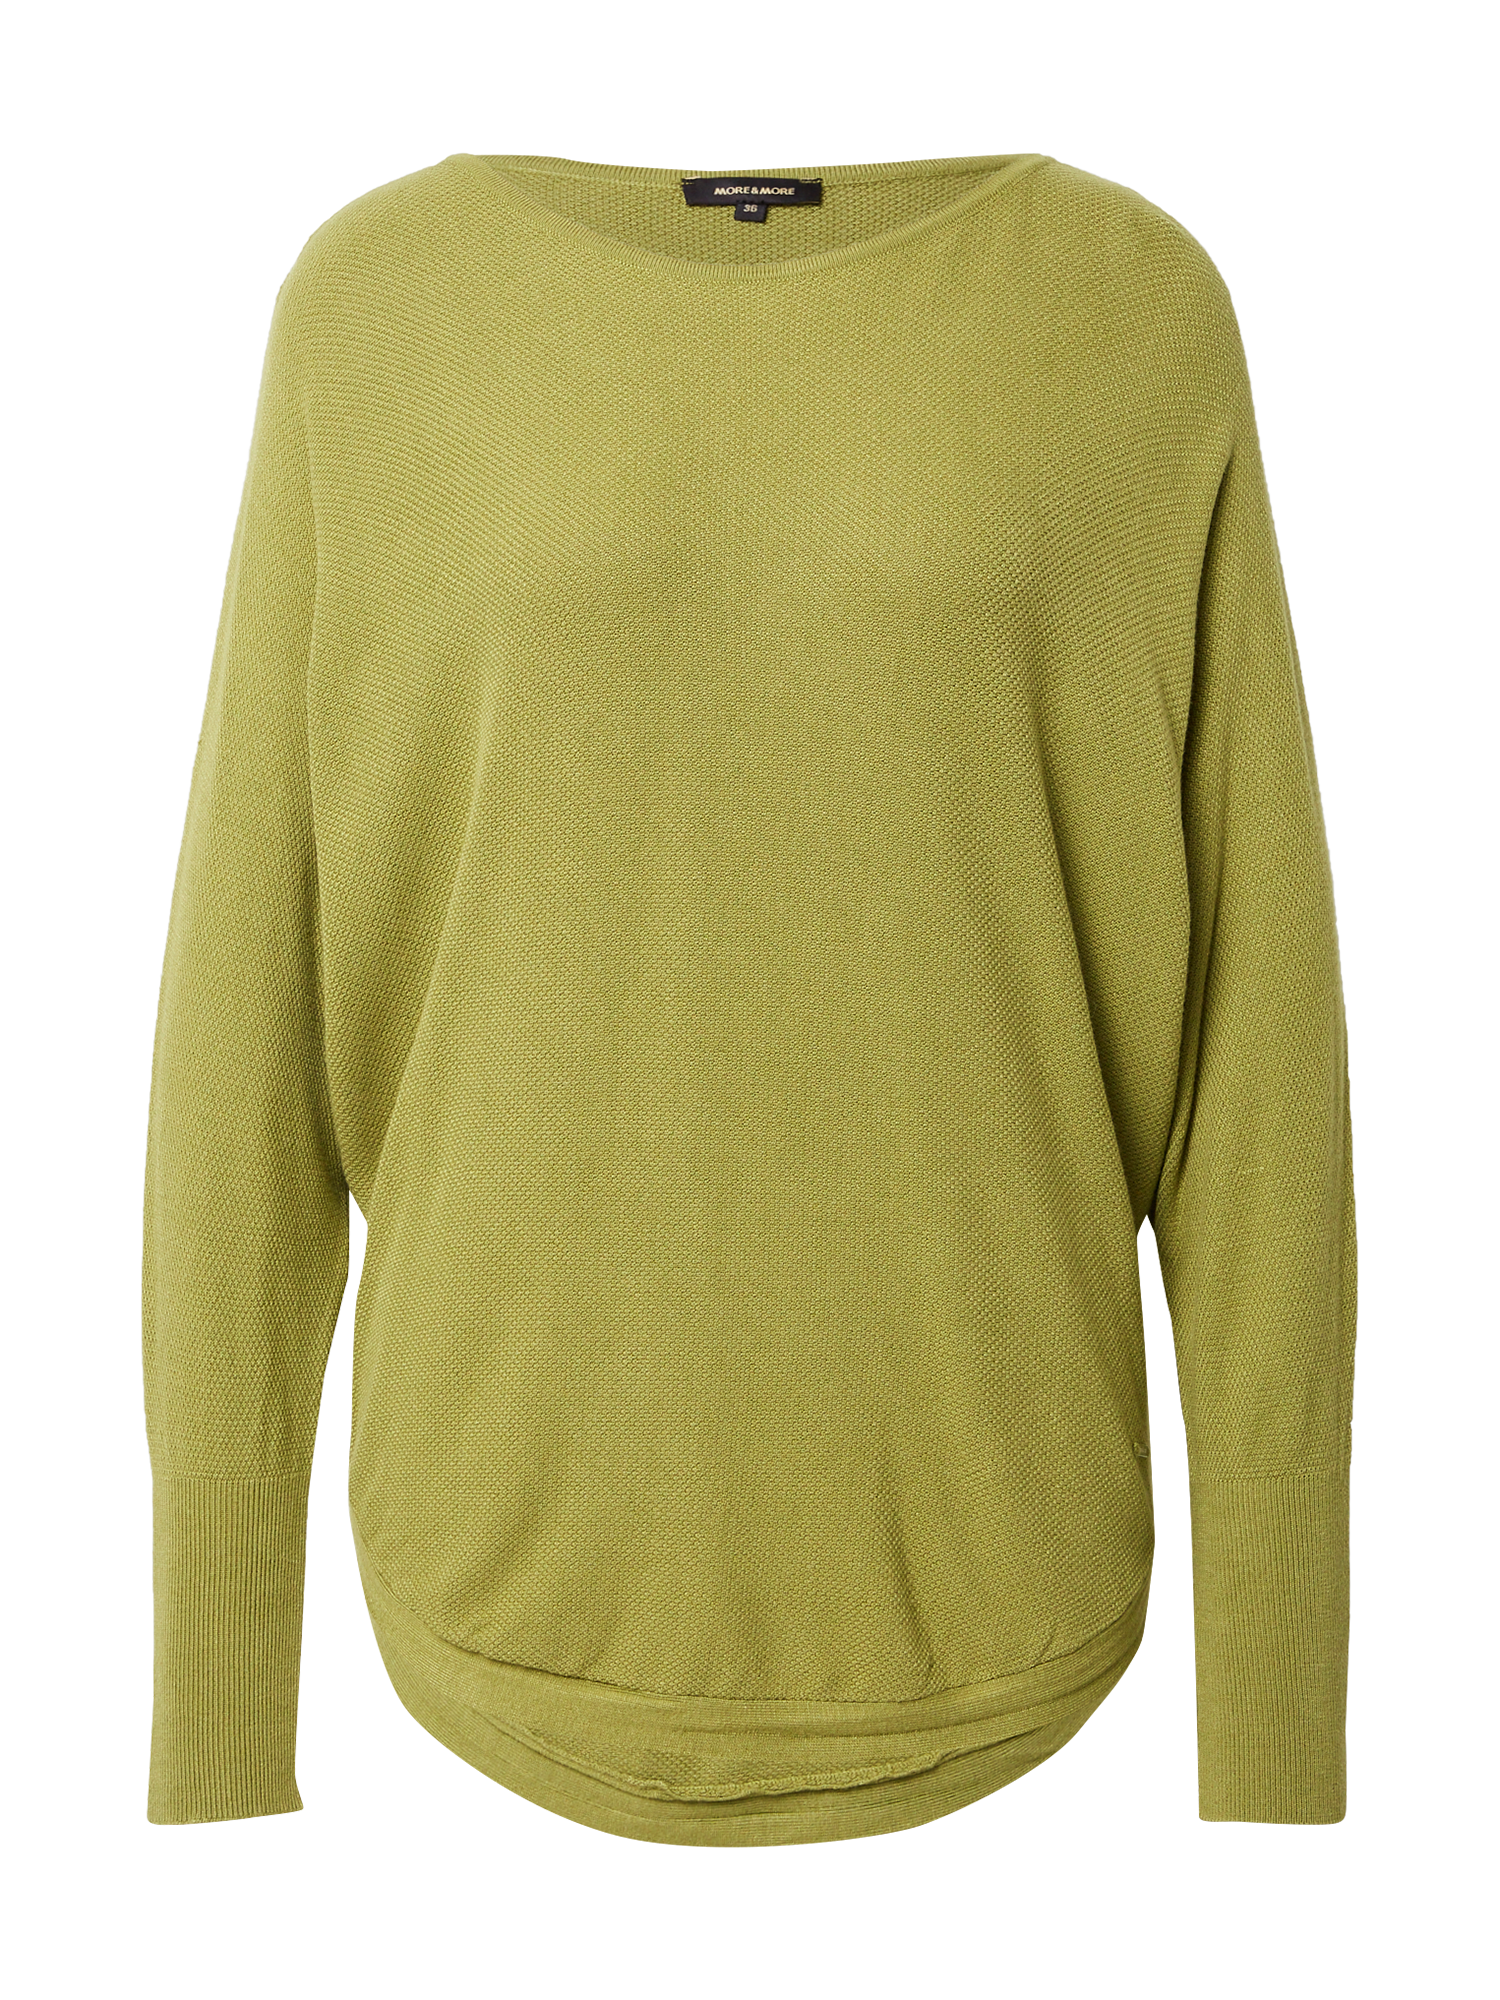 Odzież Kobiety MORE & MORE Sweter w kolorze Trzcinam 